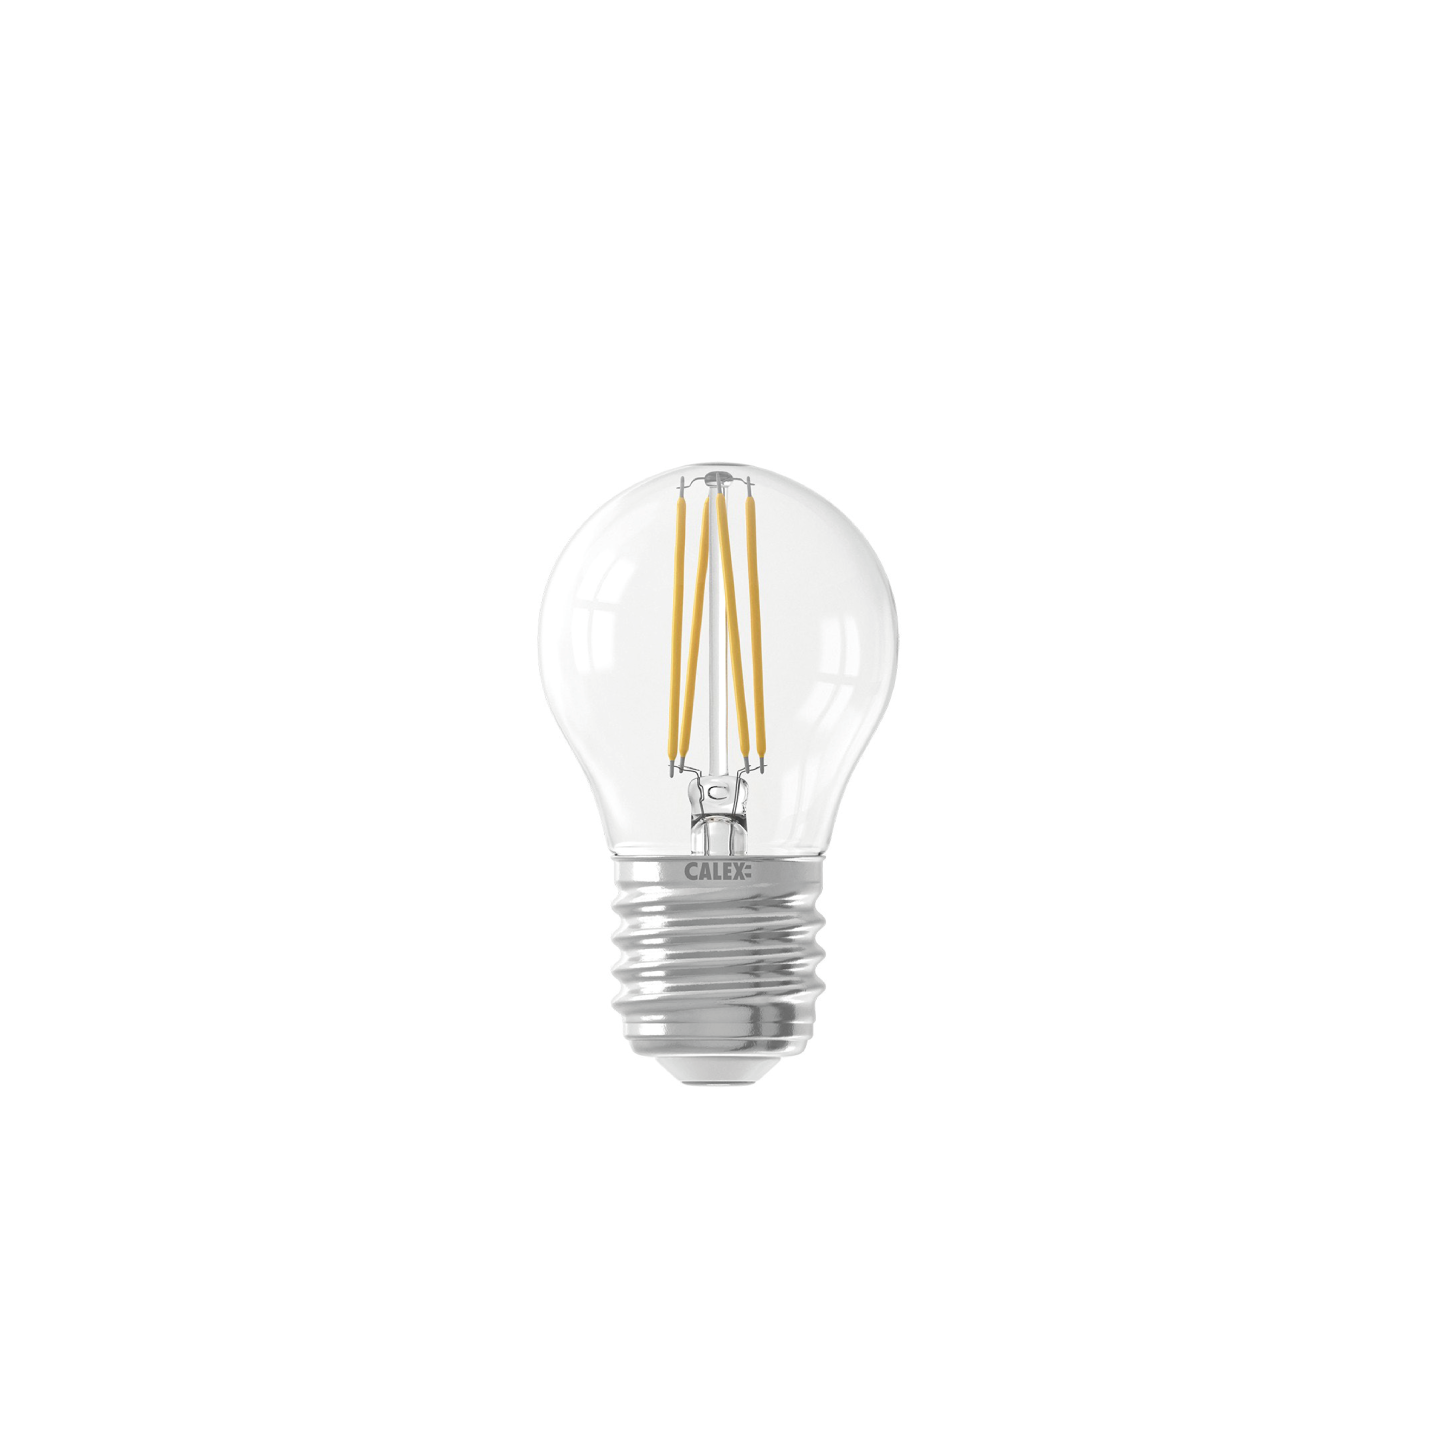 calex-smart-kogel-led-lamp-4.5w-450lm-E27